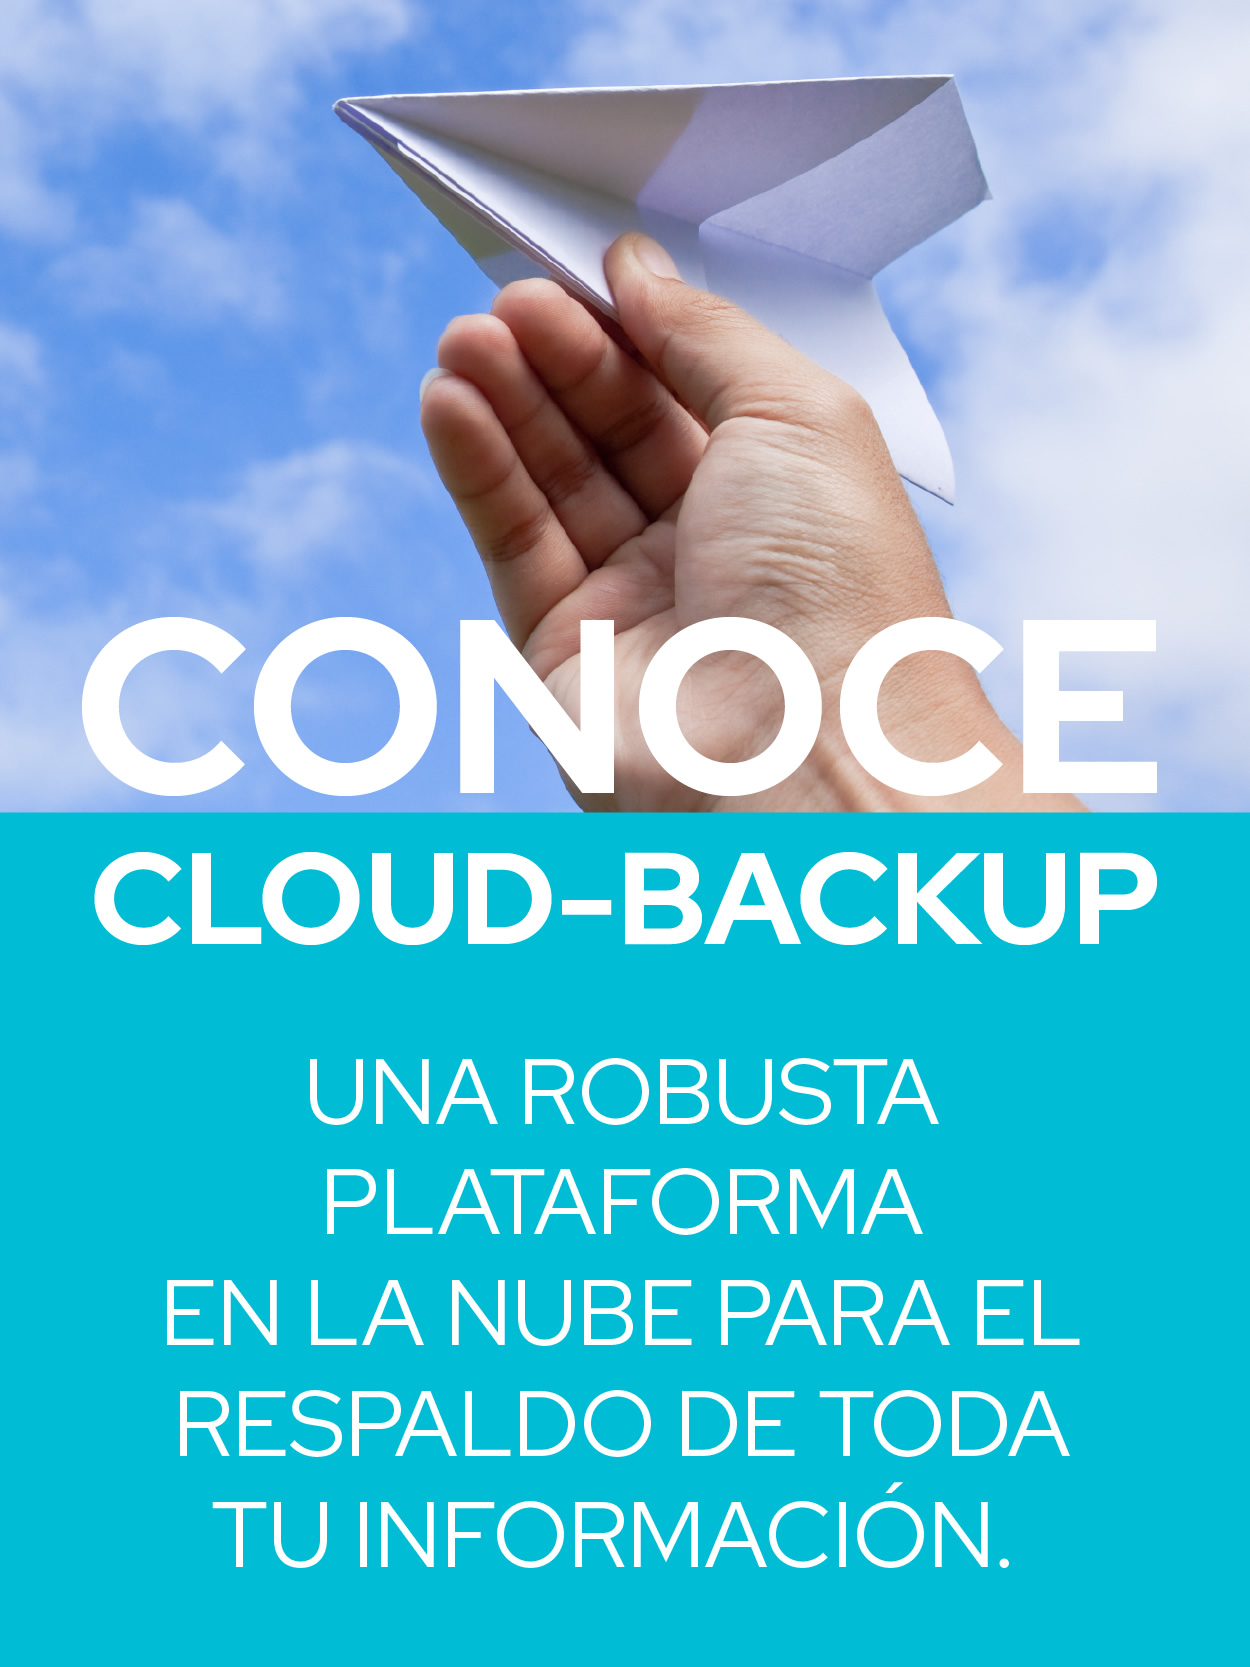 Conoce Ciomex Cloud-Backup, una robusta plataforma en la nube para el respaldo de toda tu información